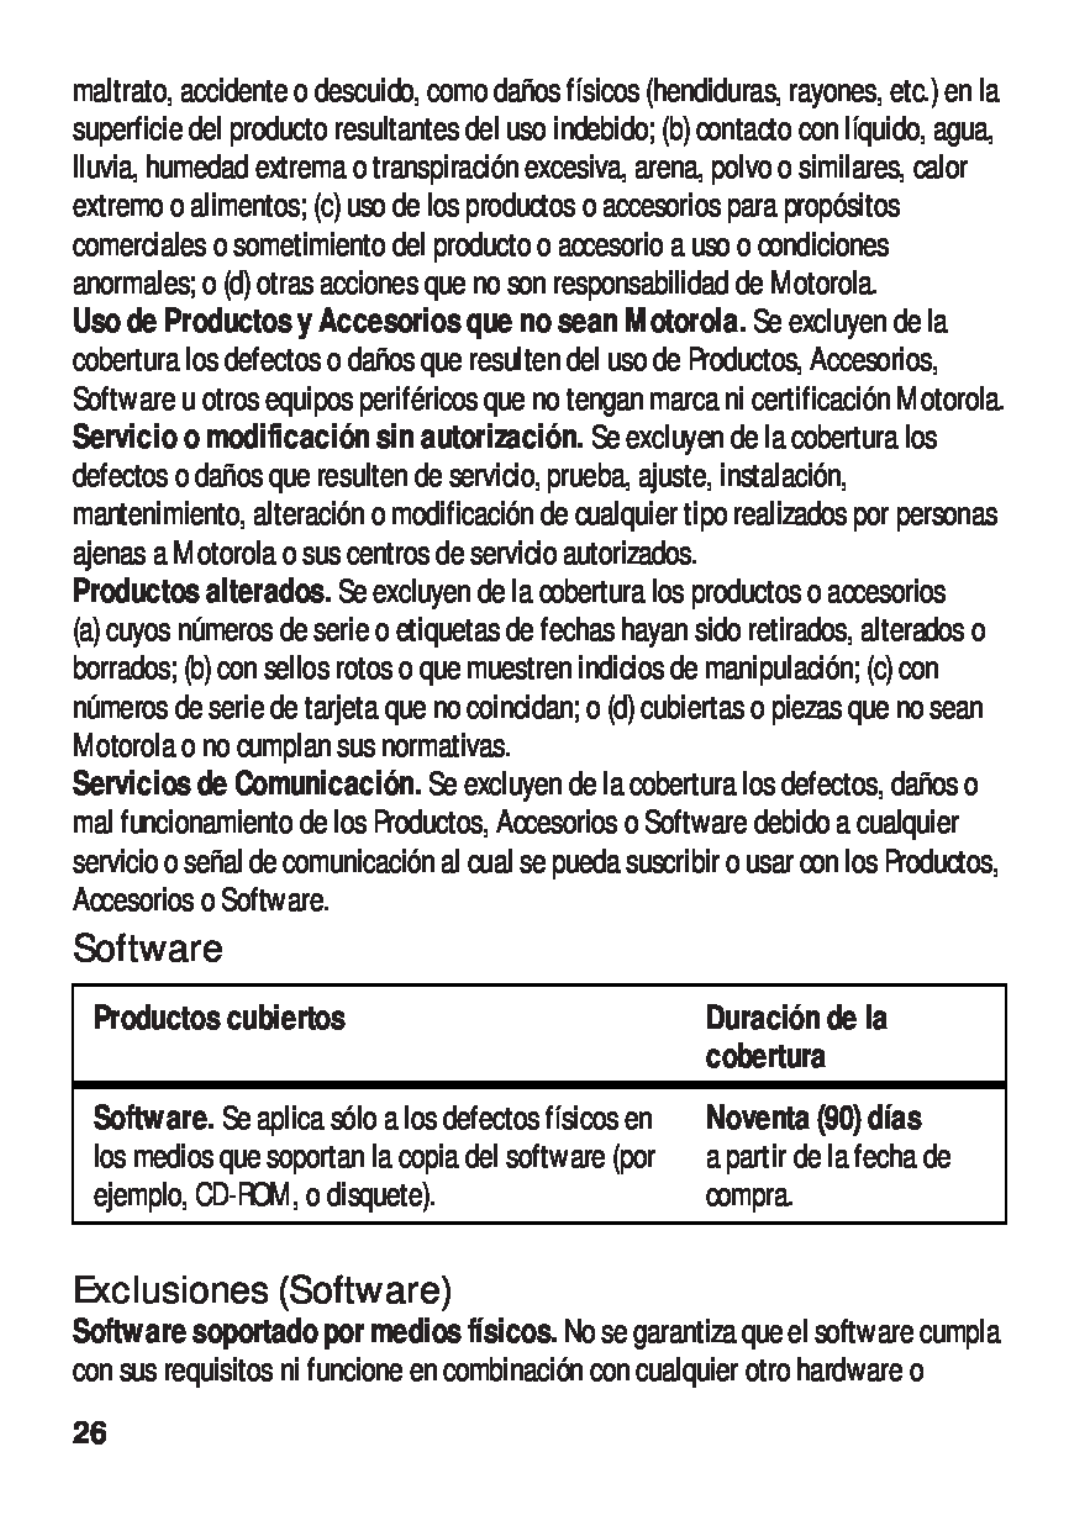 Motorola TX500 manual Exclusiones Software, cobertura, Productos cubiertos, Noventa 90 días a partir de la fecha de compra 